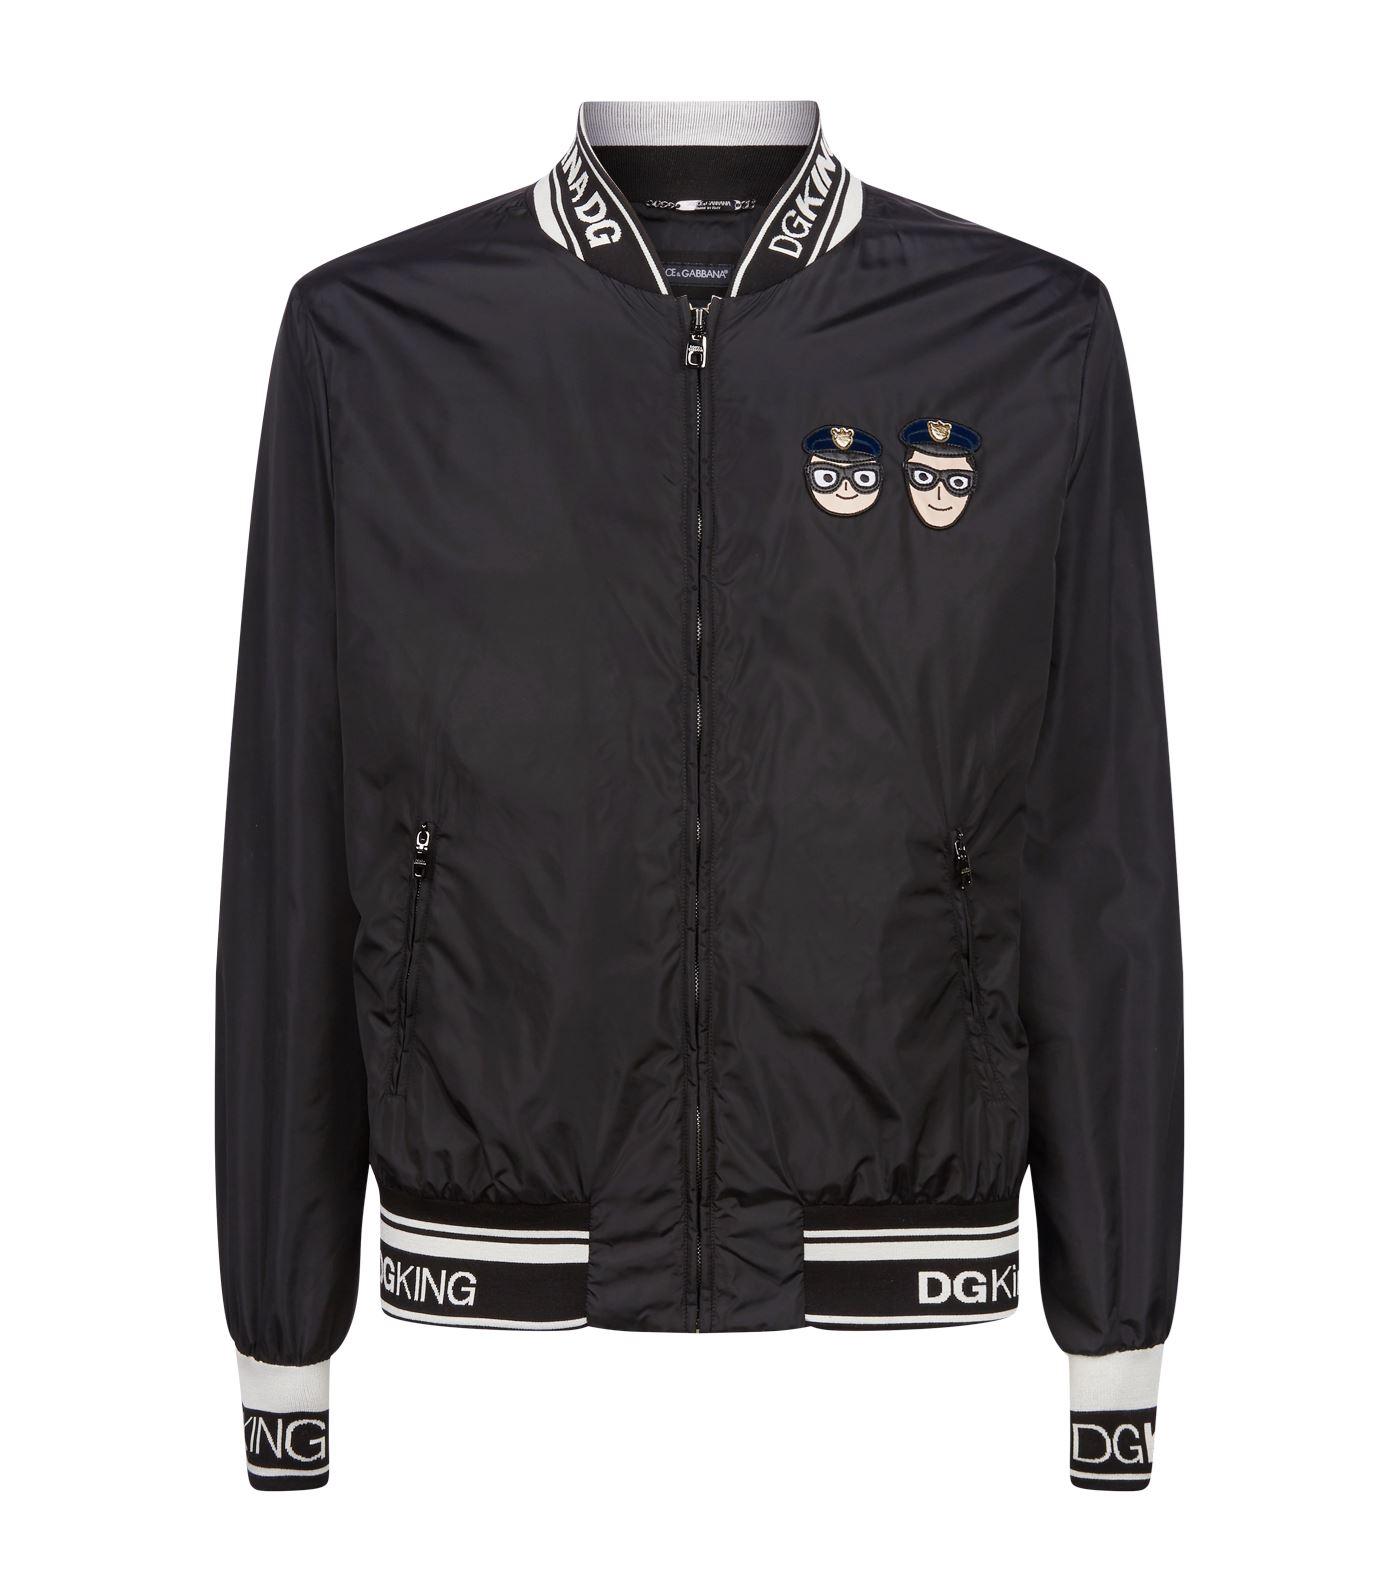 Dolce & Gabbana Dg King Bomber Jacket in Black for Men - Lyst